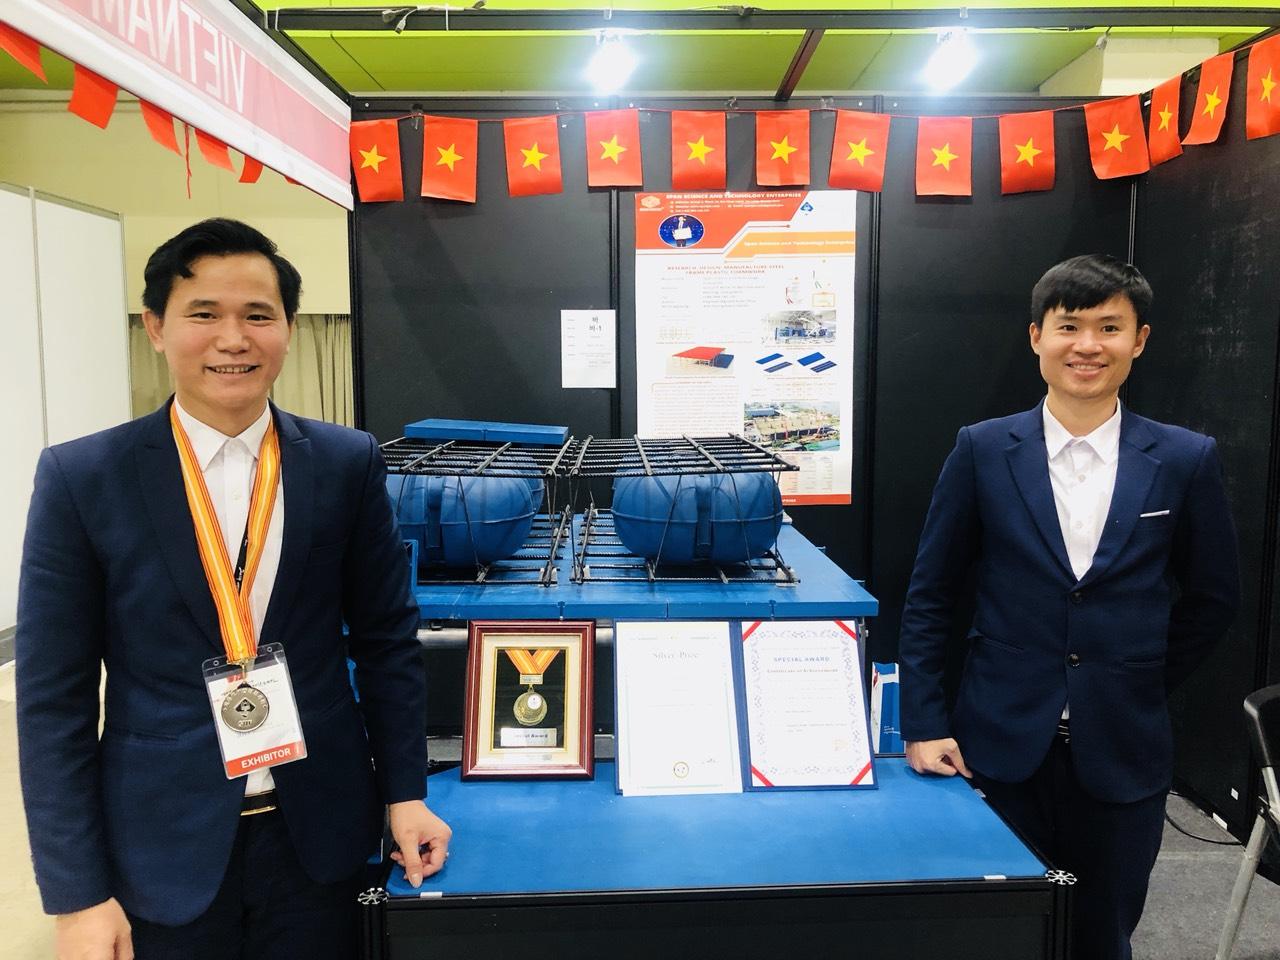 Ông Nguyễn Xuân Thủy, tác giả công trình “Nghiên cứu, thiết kế, chế tạo, sản xuất tấm cốp pha nhựa khung thép”, giành HCB tại SIIF 2019.